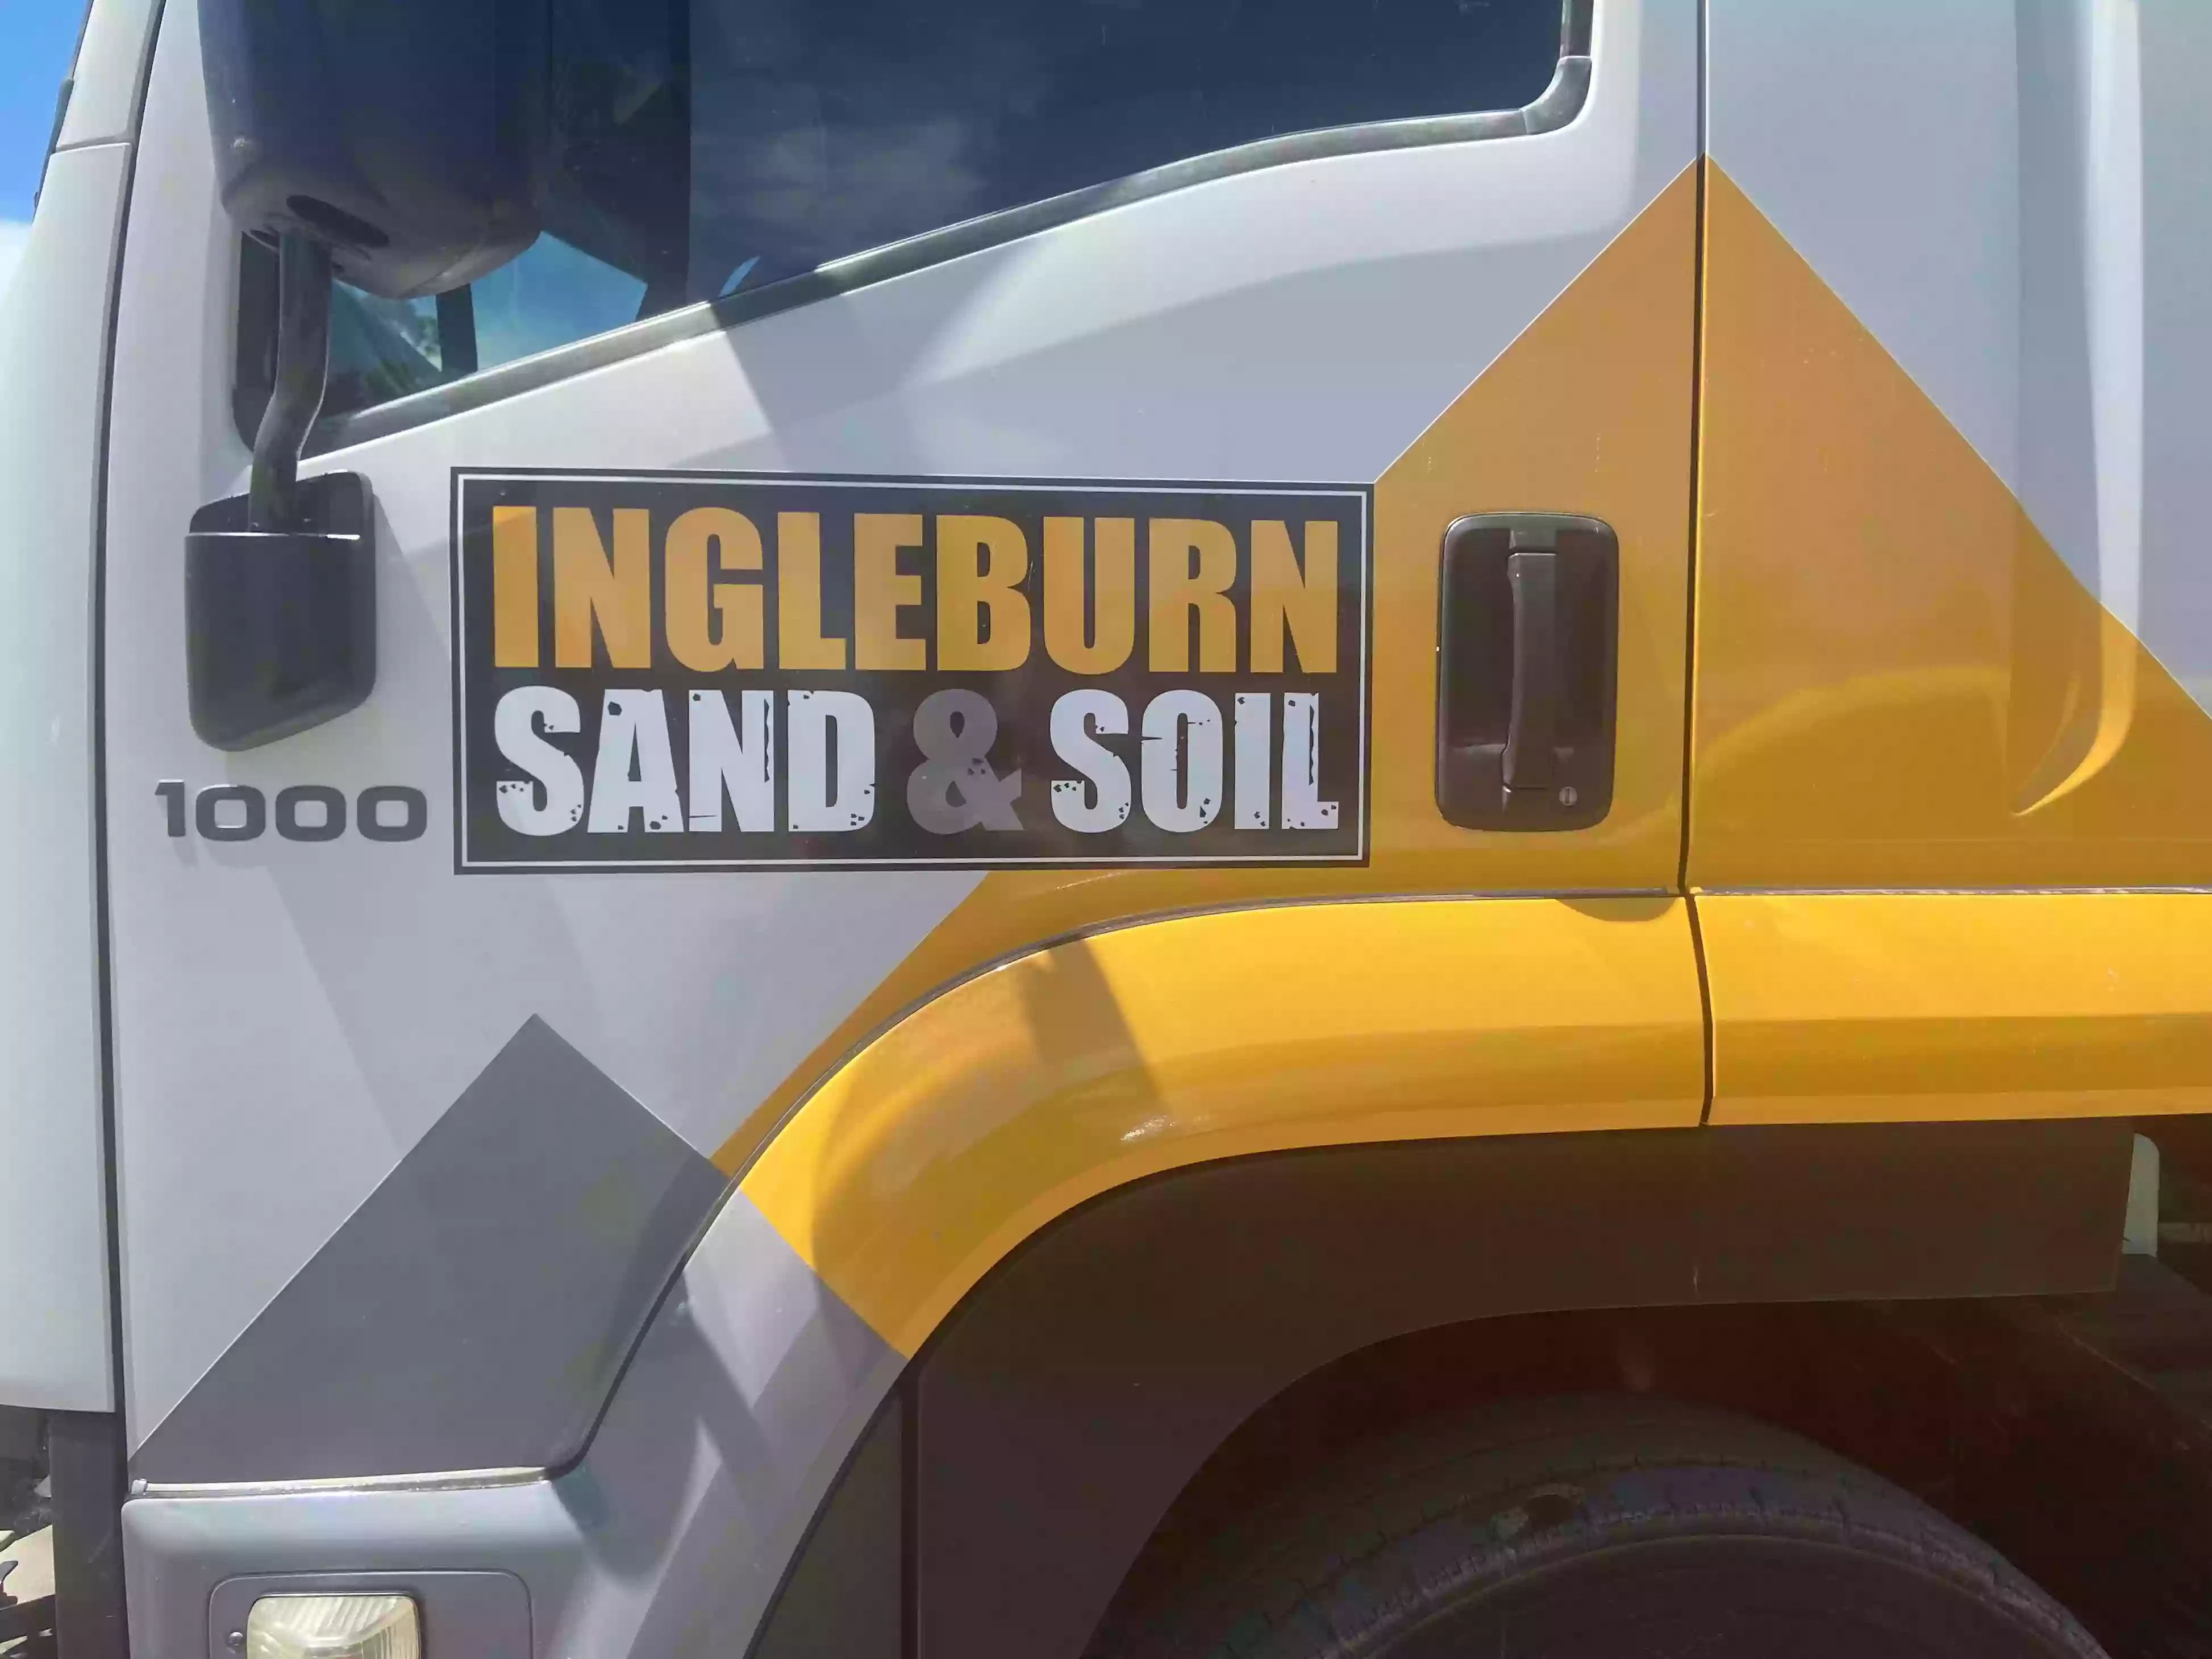 Ingleburn Sand & Soil